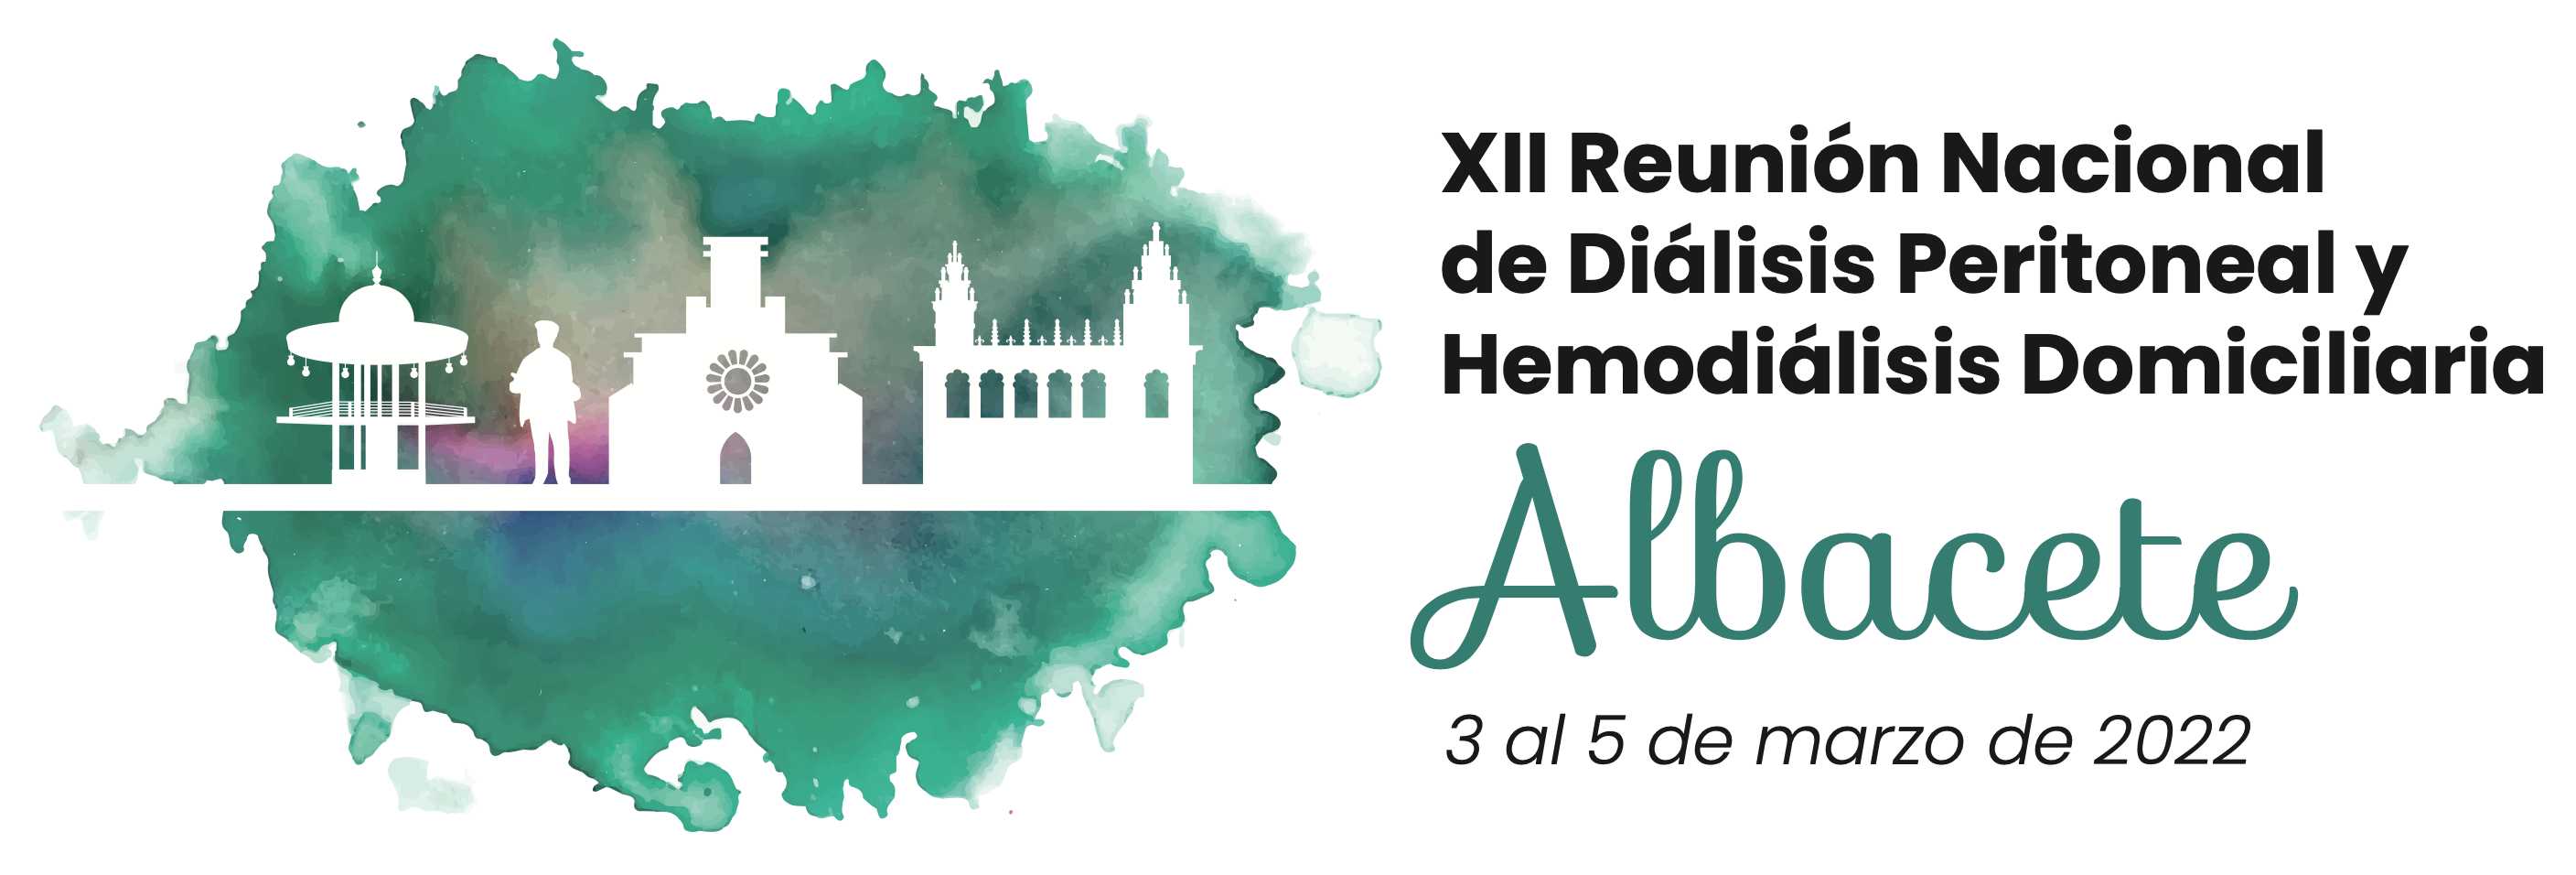 Convocatoria gráficos - El alcalde de Albacete, Emilio Sáez, inaugura la XII Reunión Nacional de Diálisis Peritoneal y Hemodiálisis Domiciliaria